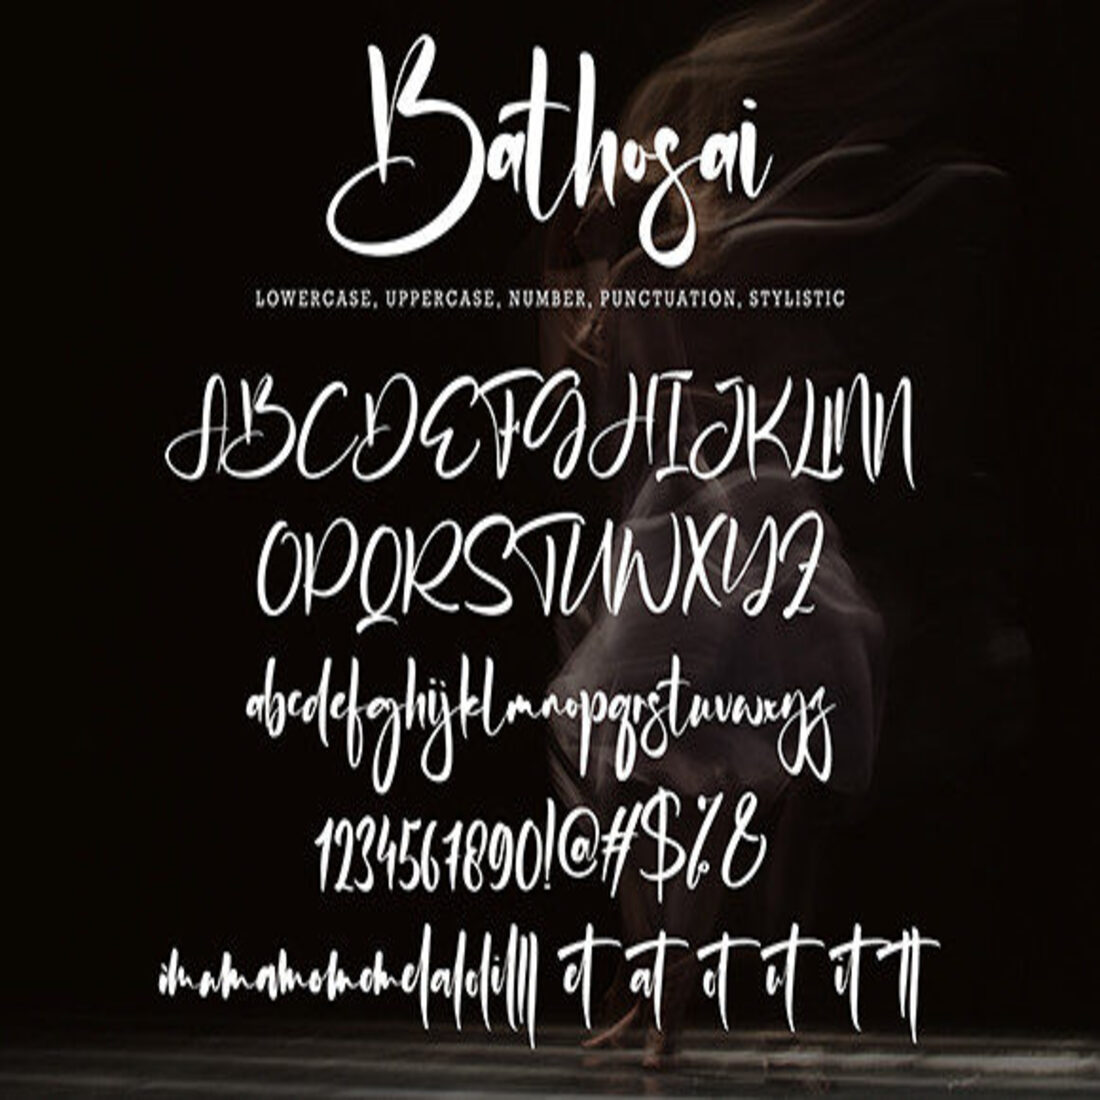 Bathosai Font cover.